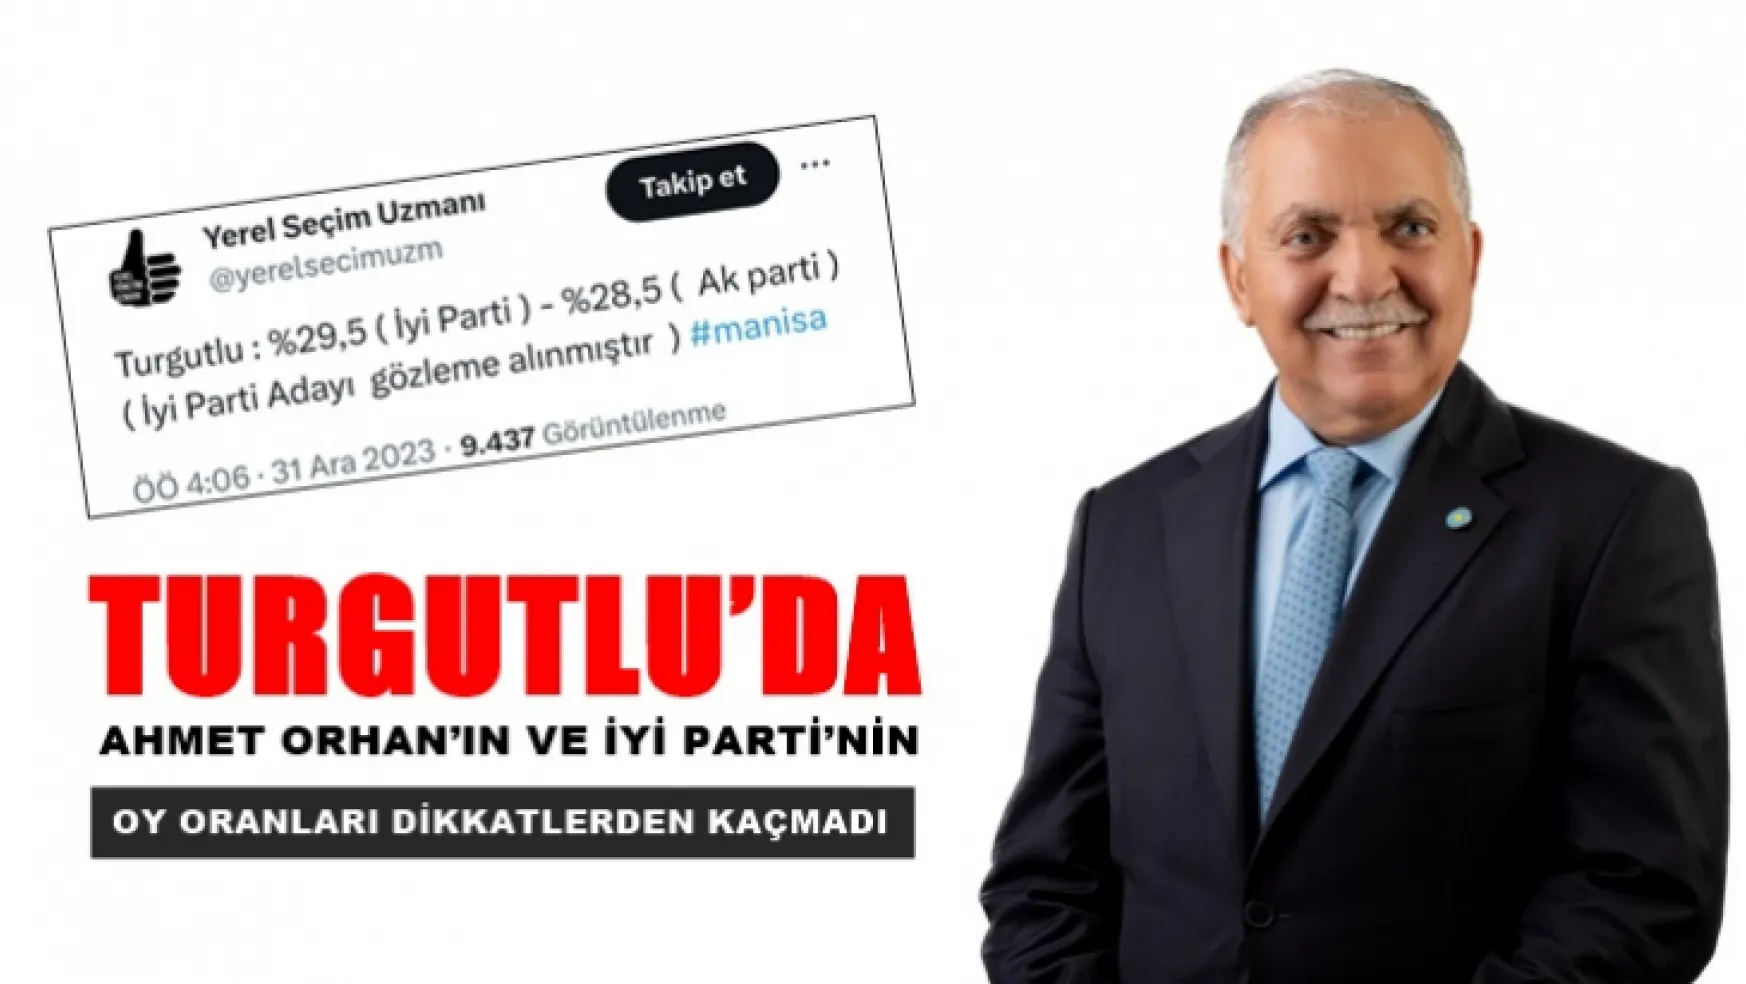 Turgutlu'da Ahmet Orhan'ın ve İyi Parti'nin oy oranları dikkatlerden kaçmadı